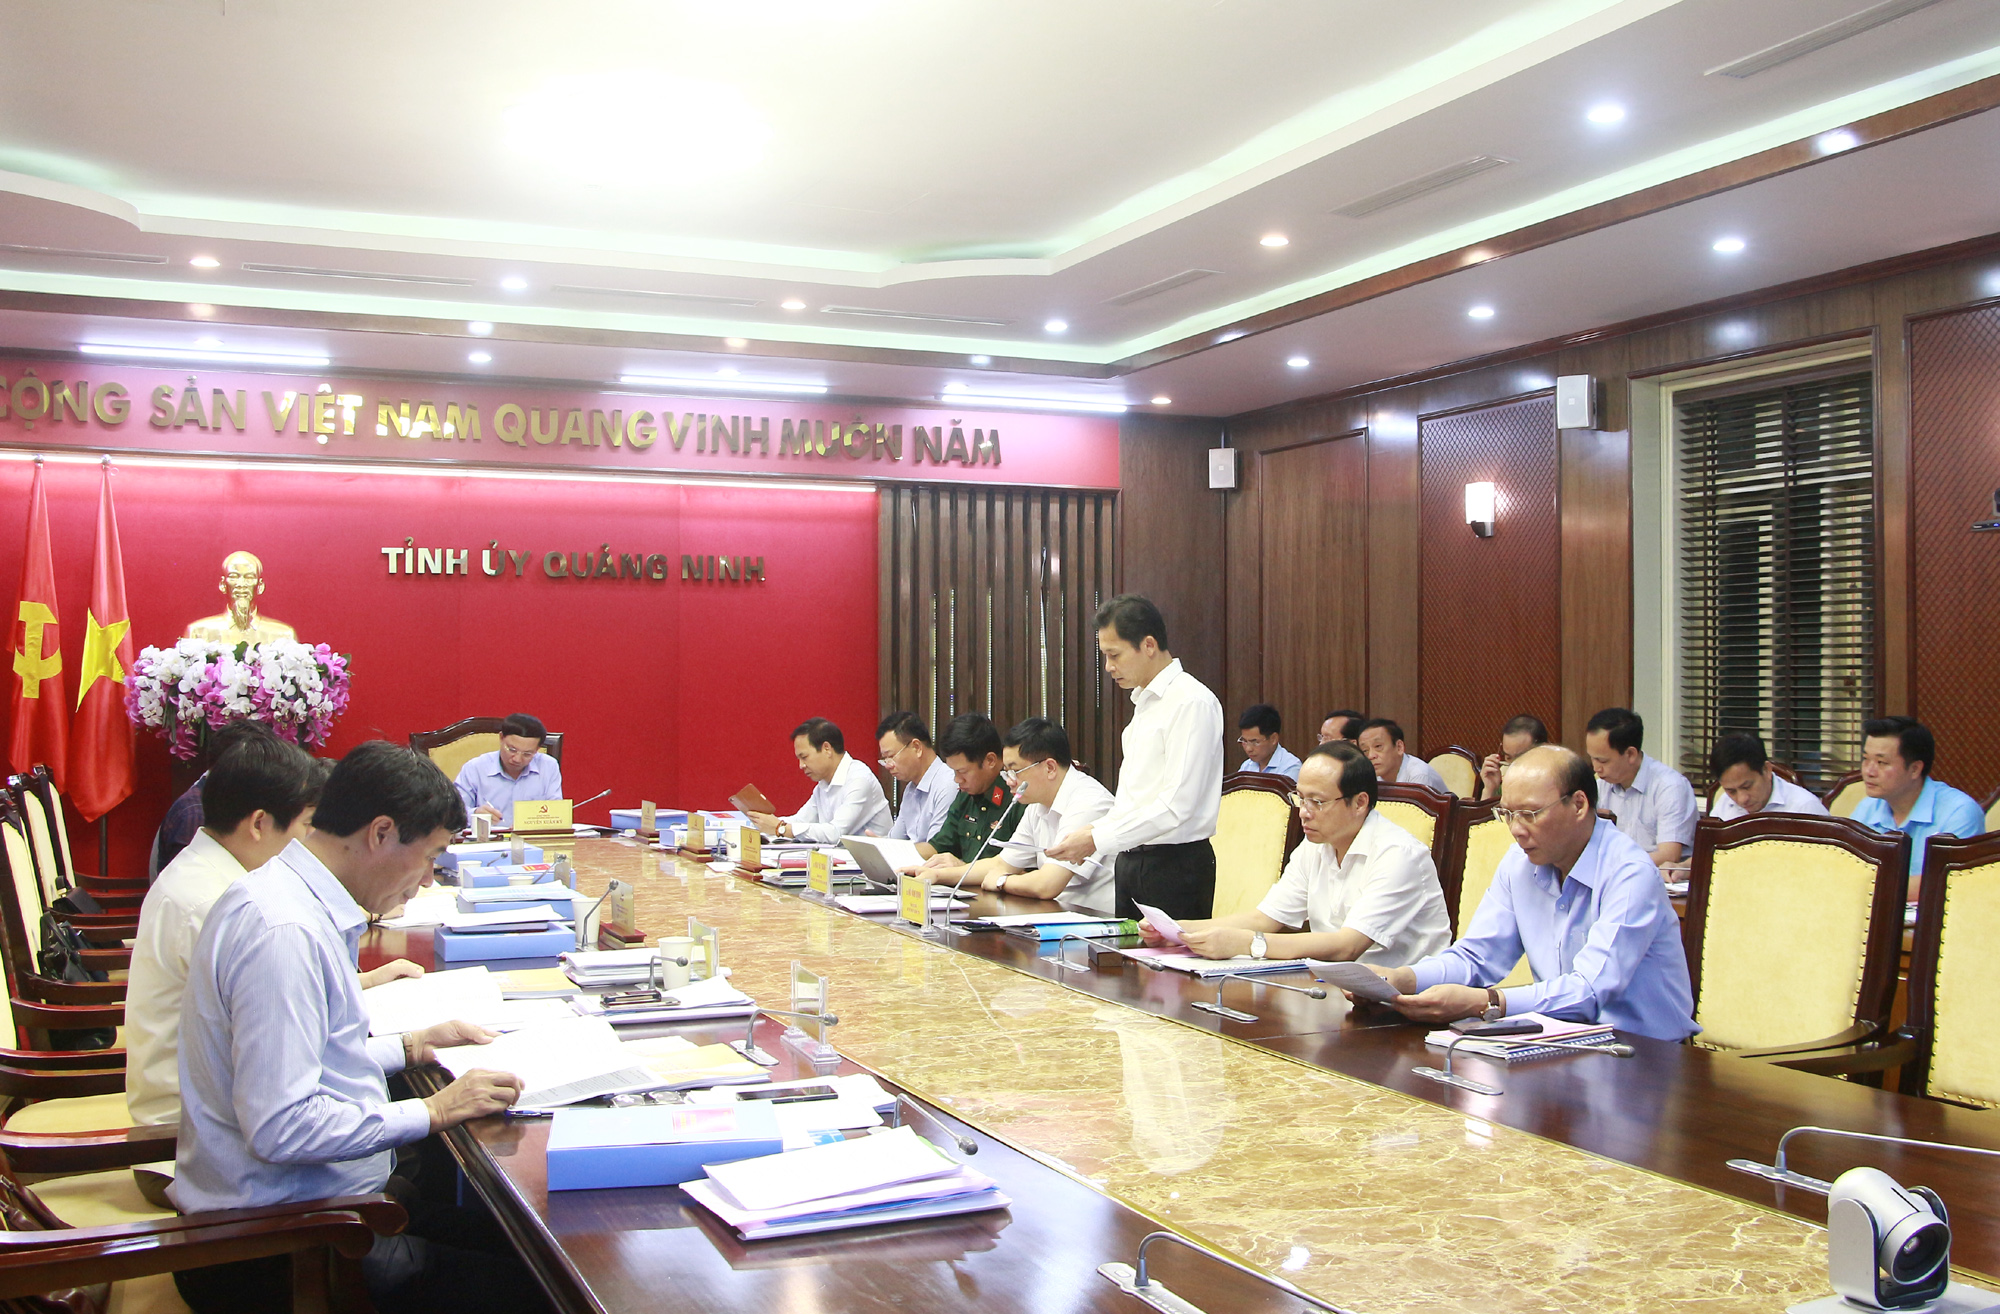 Lãnh đạo Thị ủy Quảng Yên báo cáo công tác chuẩn bị Đại hội đại biểu Đảng bộ thị xã lần thứ XXI, nhiệm kỳ 2020-2025.